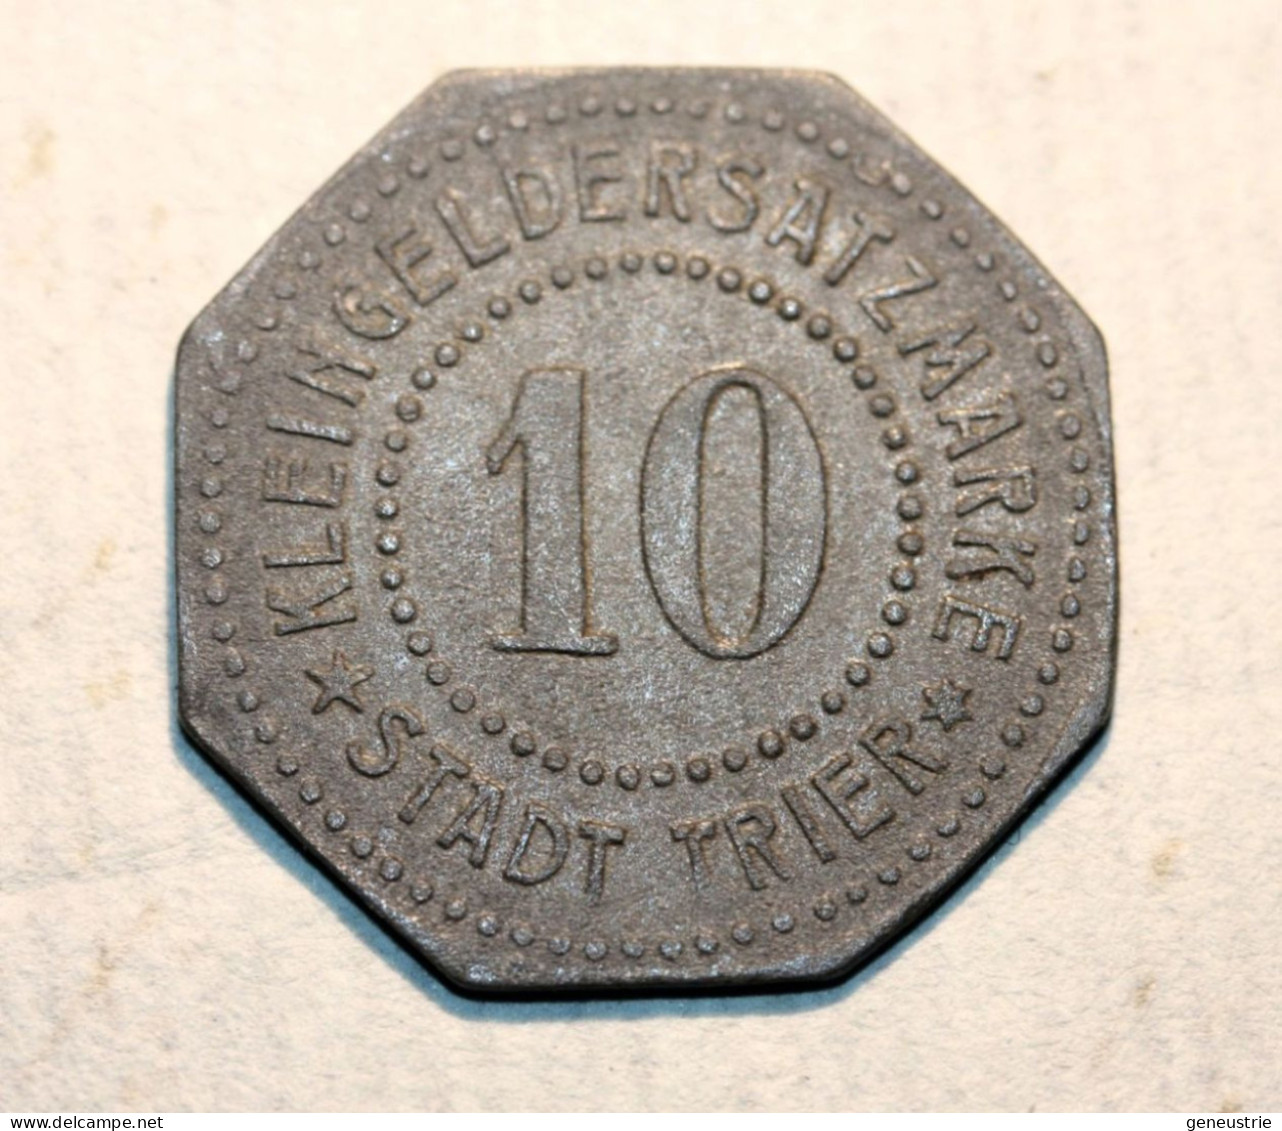 WWI Monnaie Jeton De Necessité De La Ville De Trêves "10 Stadt Trier" German Emergency Token WW1 - Notgeld